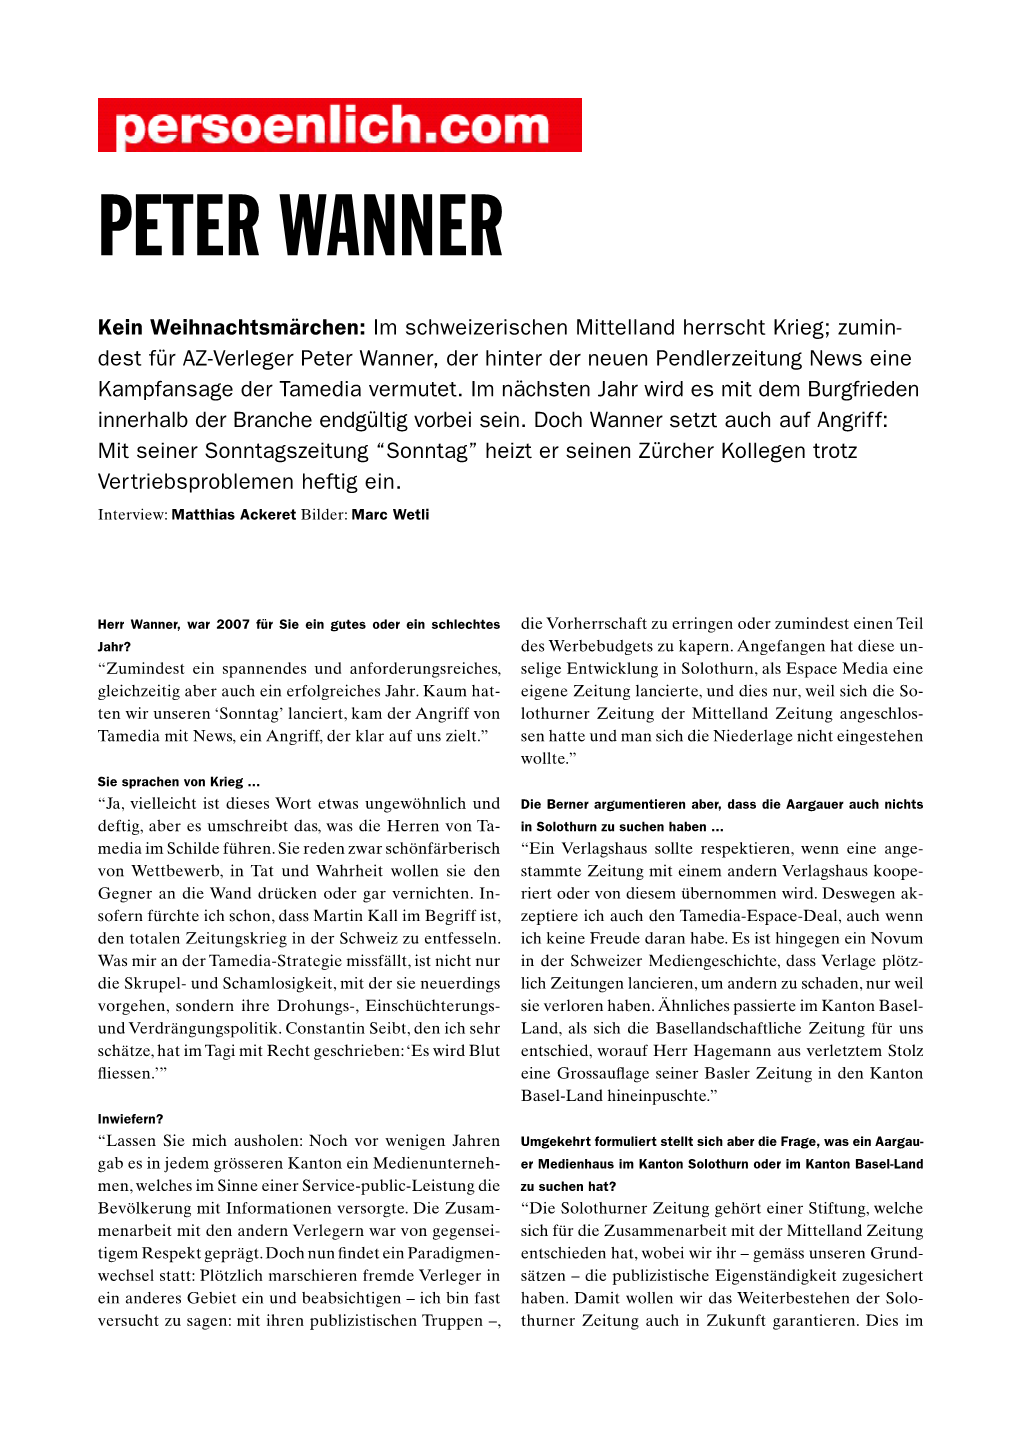 Peter Wanner